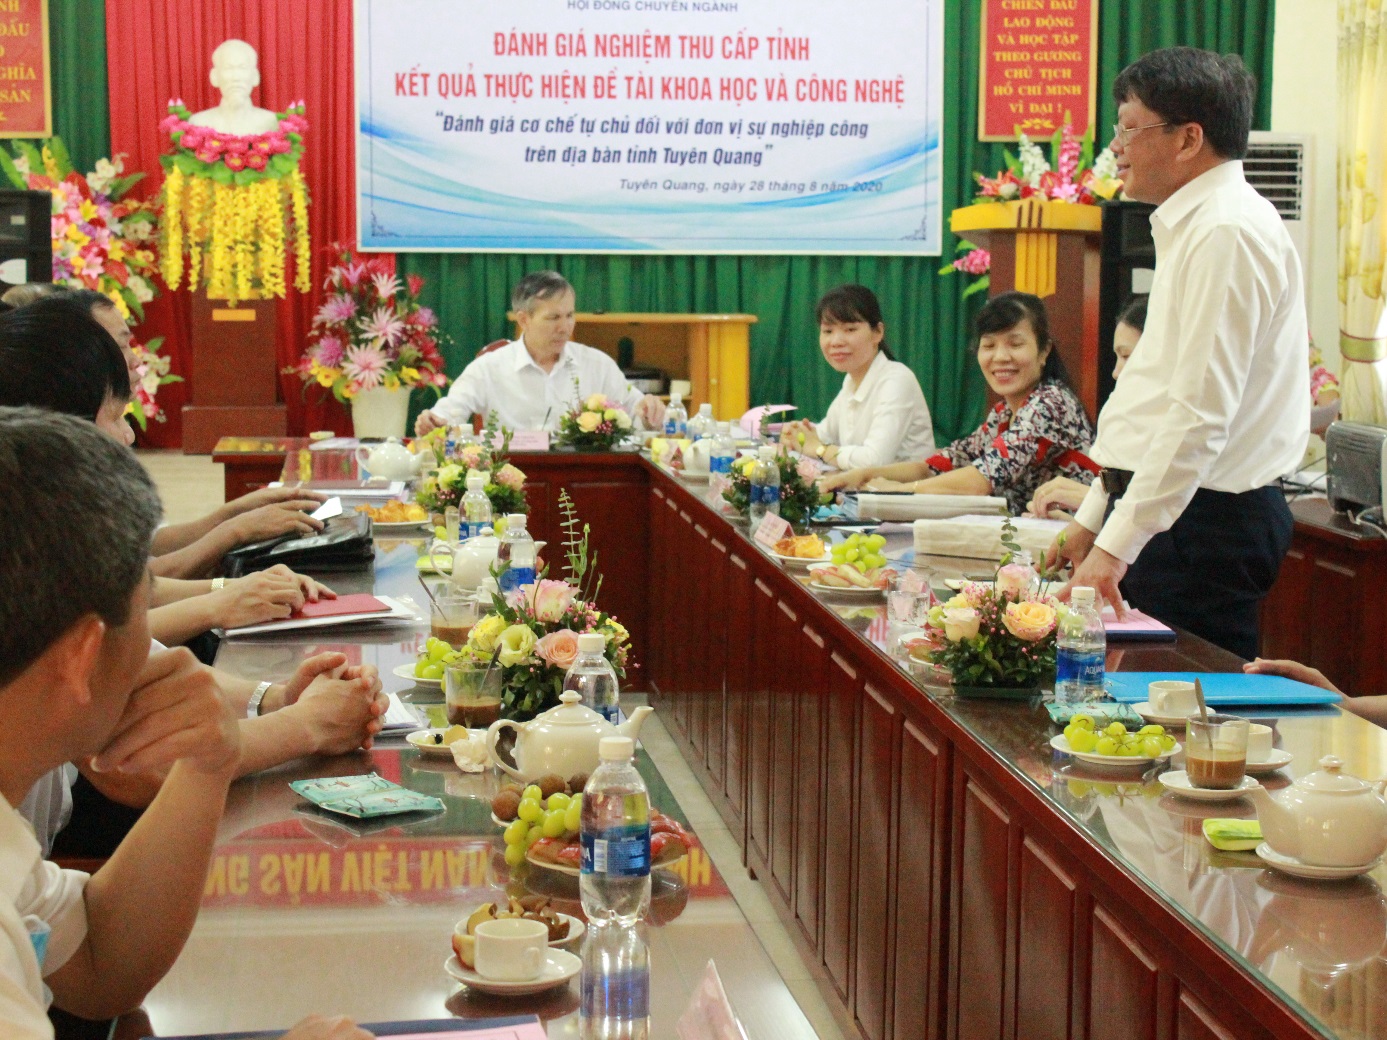 Nghiệm thu đề tài “ Đánh giá cơ chế tự chủ đối với đơn vị sự nghiệp công trên địa bàn tỉnh Tuyên Quang”